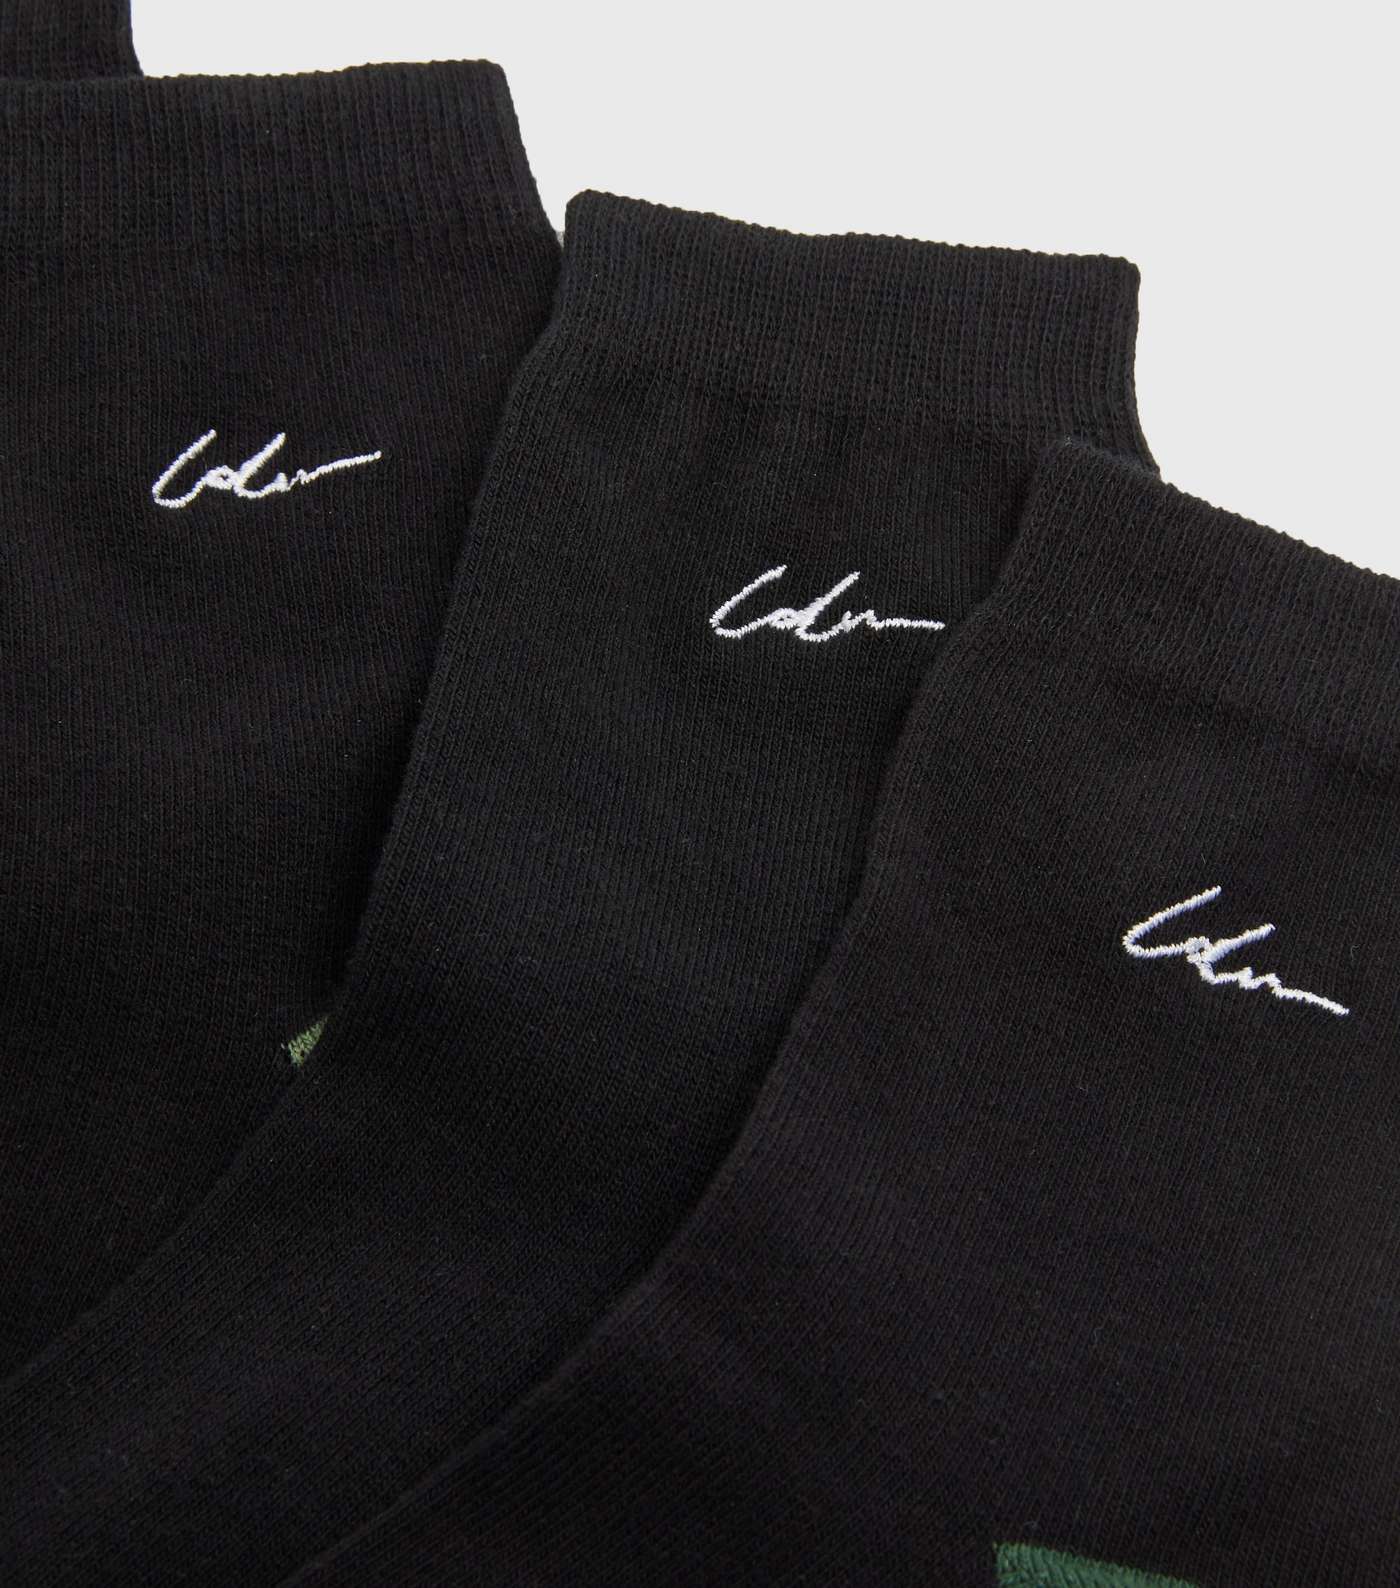 Boys 5 Pack Black LDN Embroidered Socks Image 2